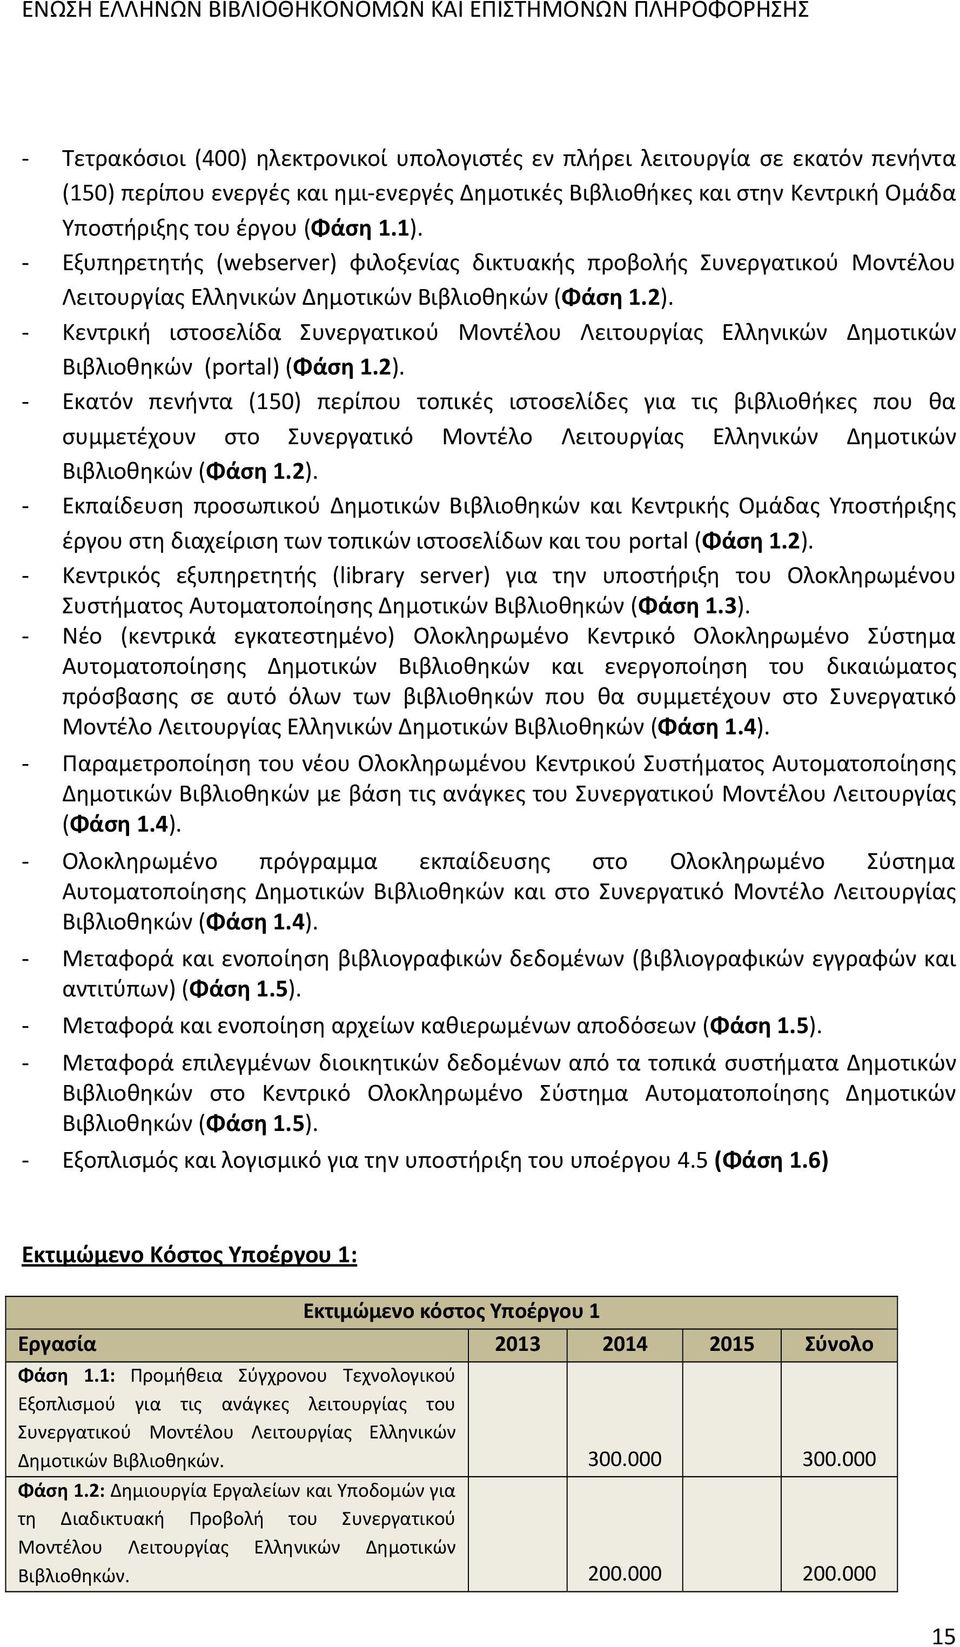 Κεντρική ιστοσελίδα Συνεργατικού Μοντέλου Λειτουργίας Ελληνικών Δημοτικών Βιβλιοθηκών (portal) (Φάση 1.2).